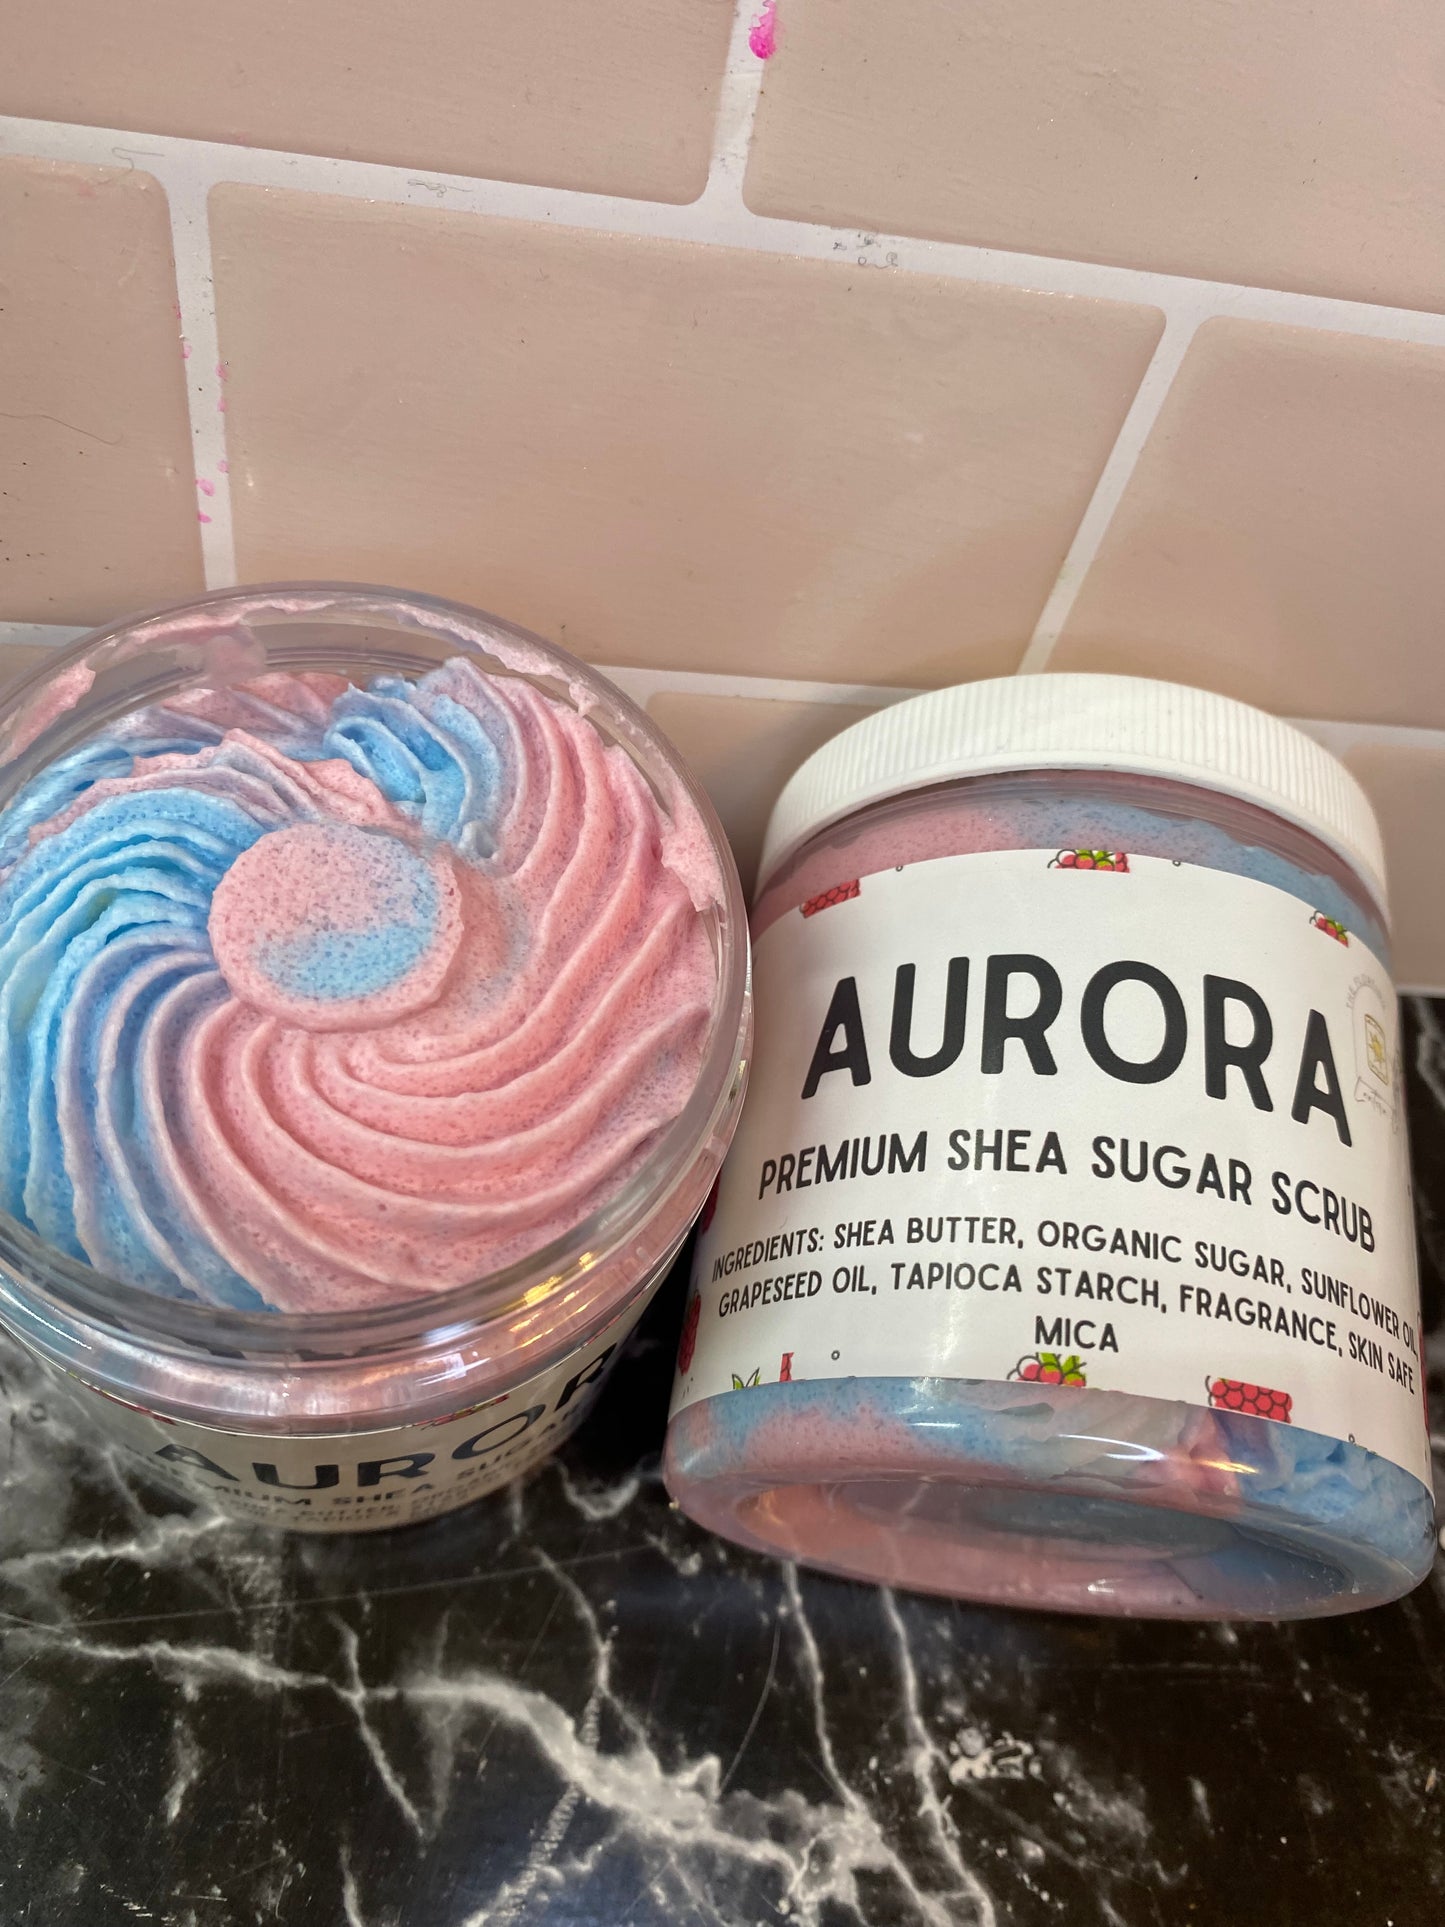 Aurora Shea Sugar Scrub